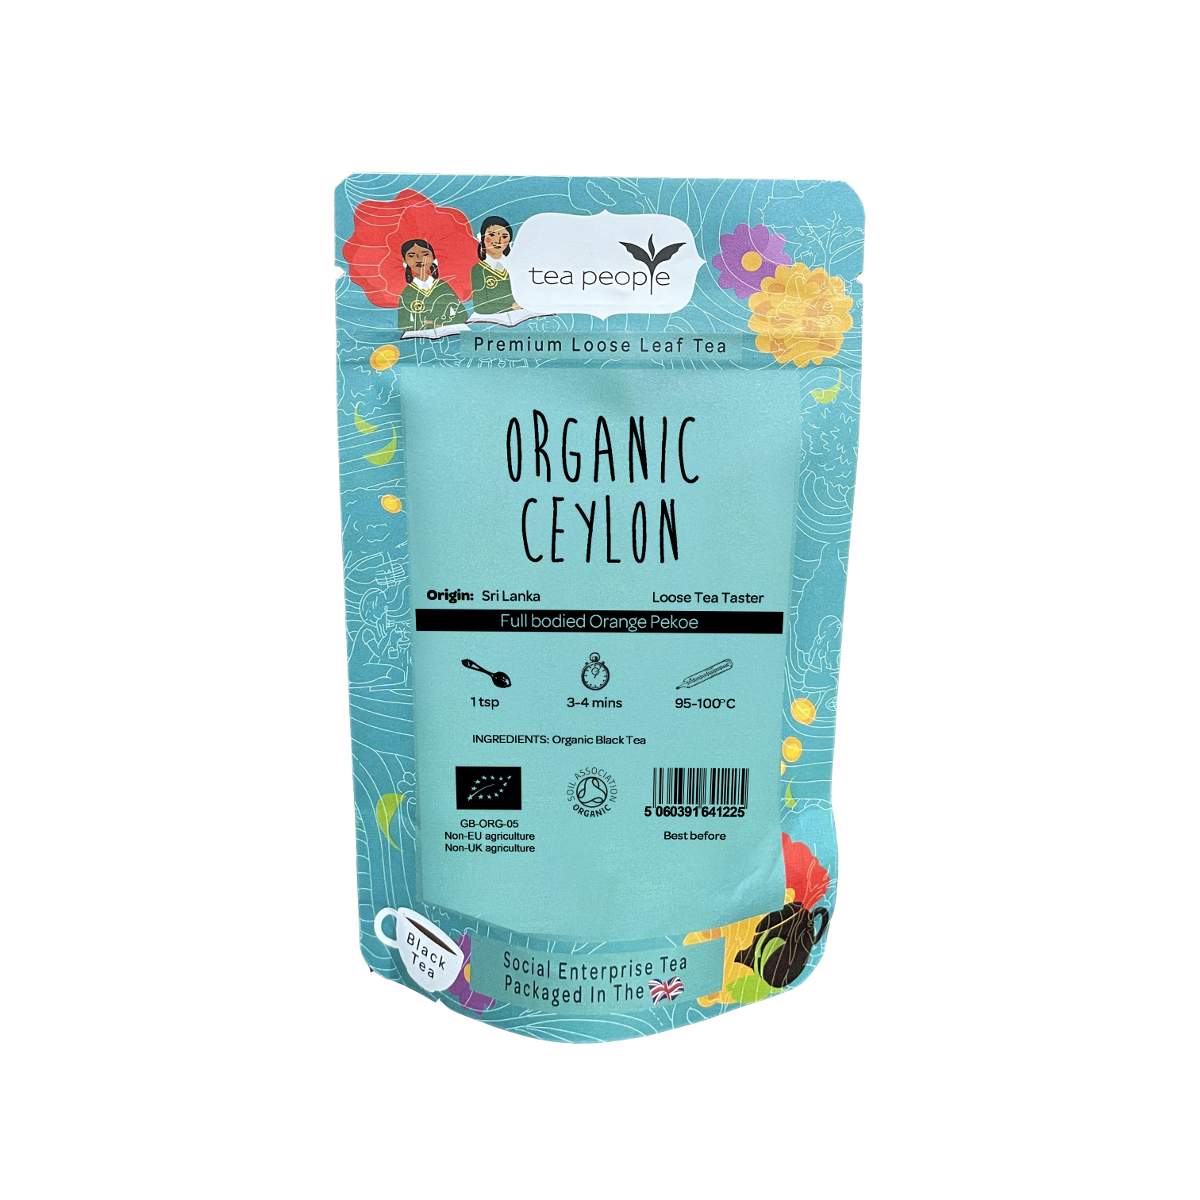 Organic Ceylon - Loose Black Tea - Loose Tea Taster Pack